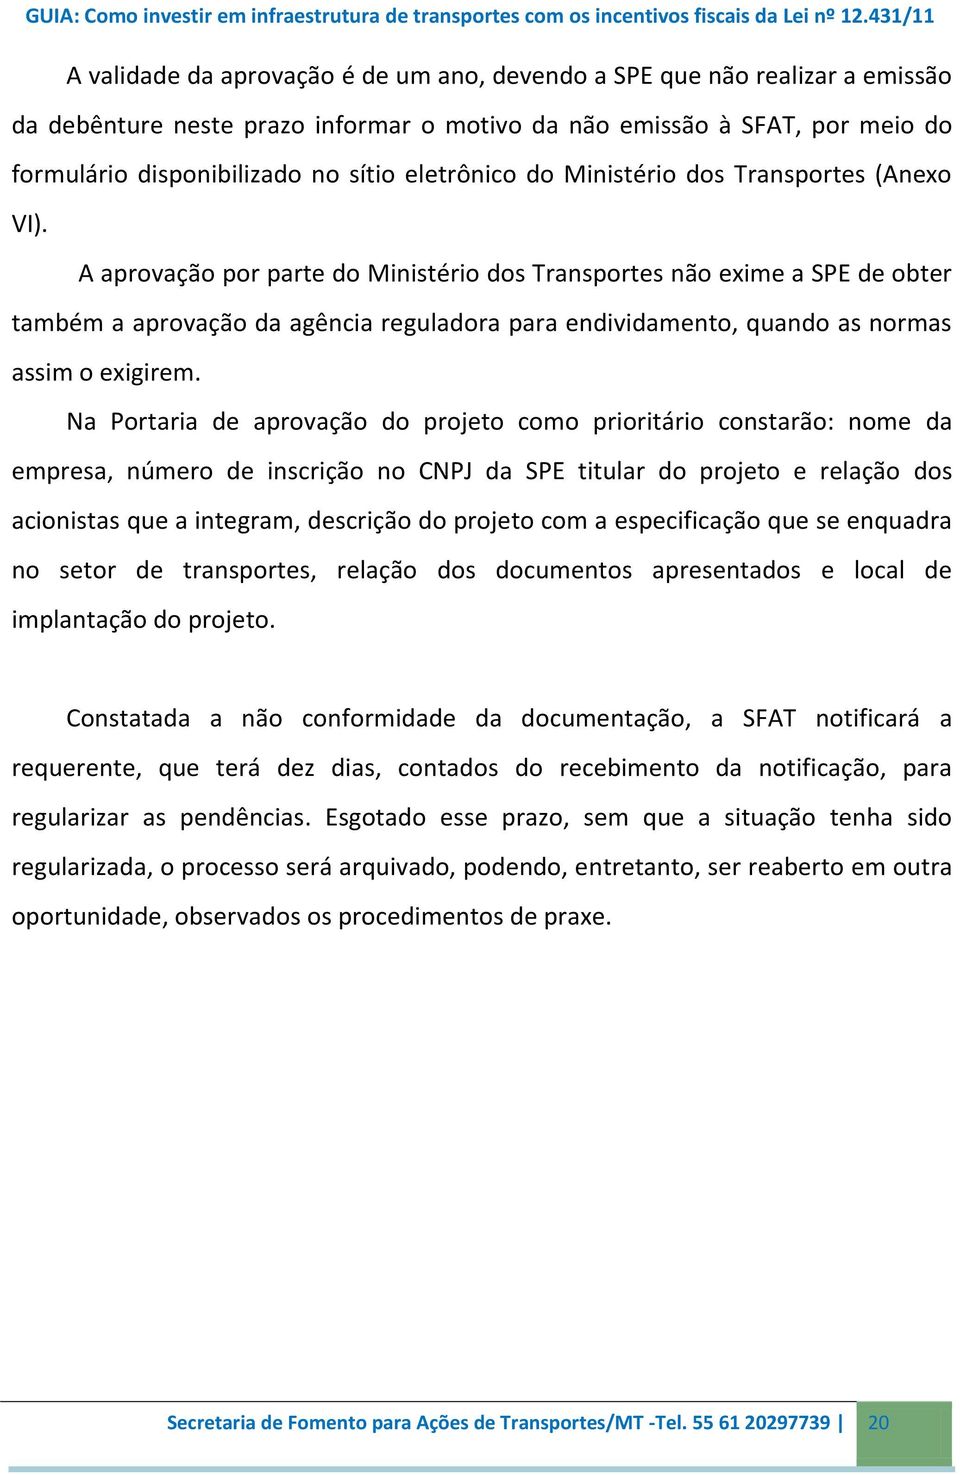 A aprovação por parte do Ministério dos Transportes não exime a SPE de obter também a aprovação da agência reguladora para endividamento, quando as normas assim o exigirem.